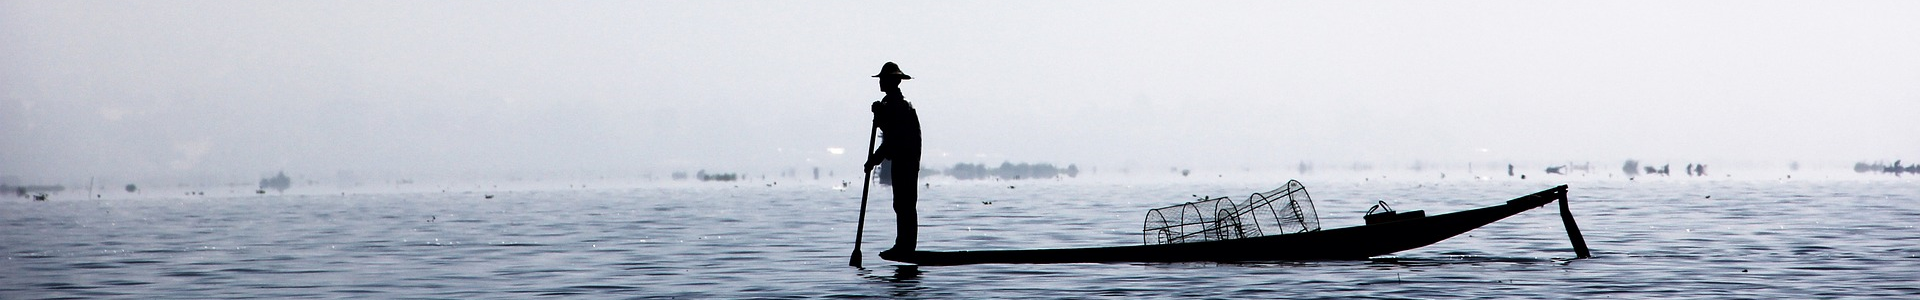 Fischer auf See in Burma 